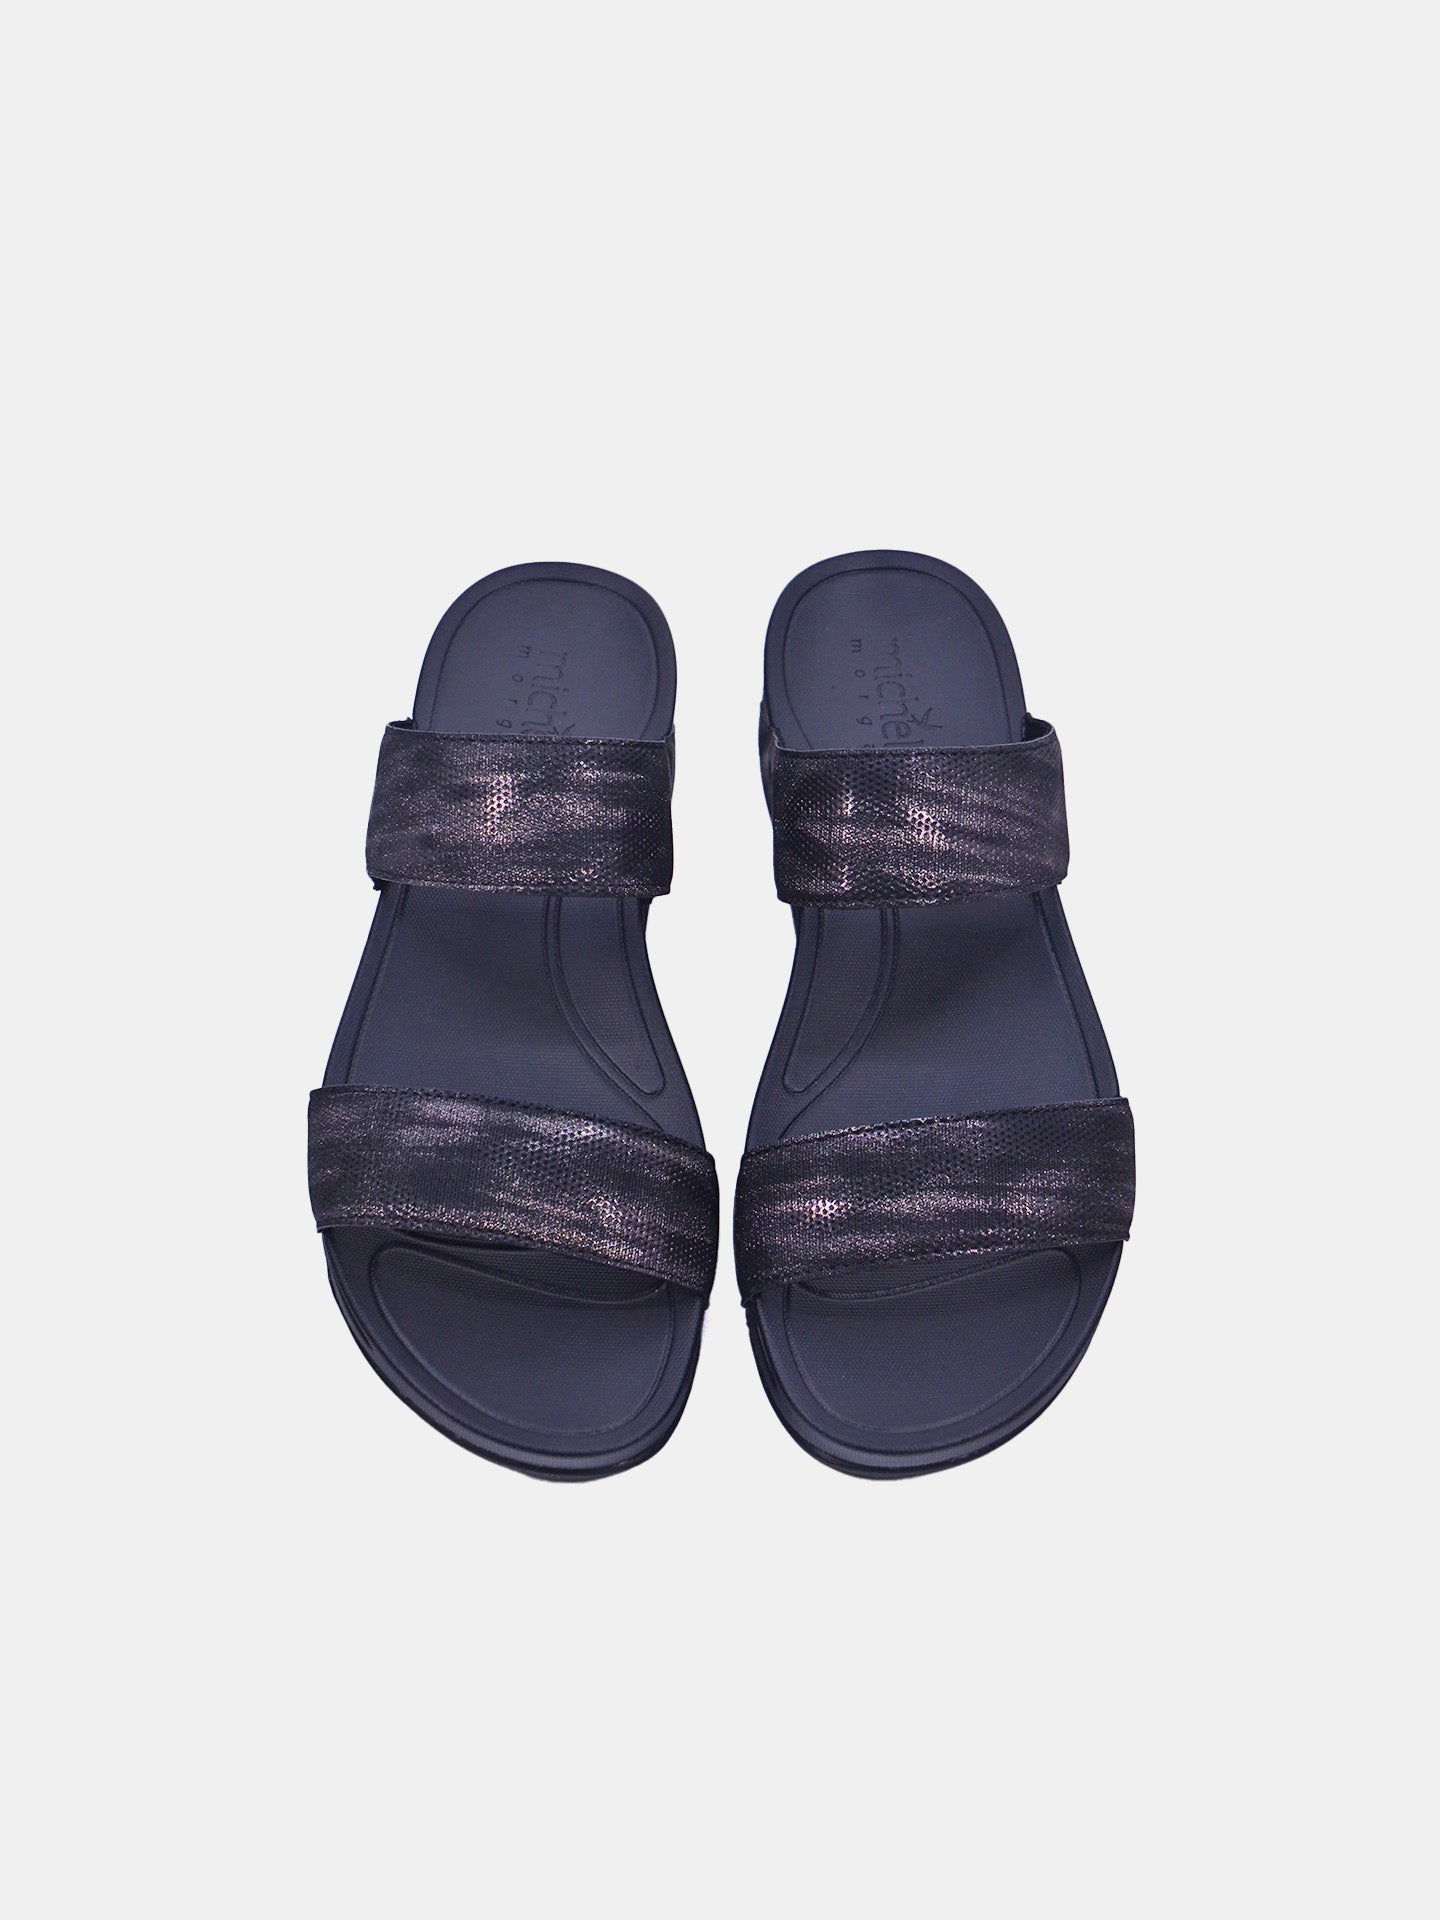 Michelle Morgan 214RJ911 Women's Sandals #color_Black